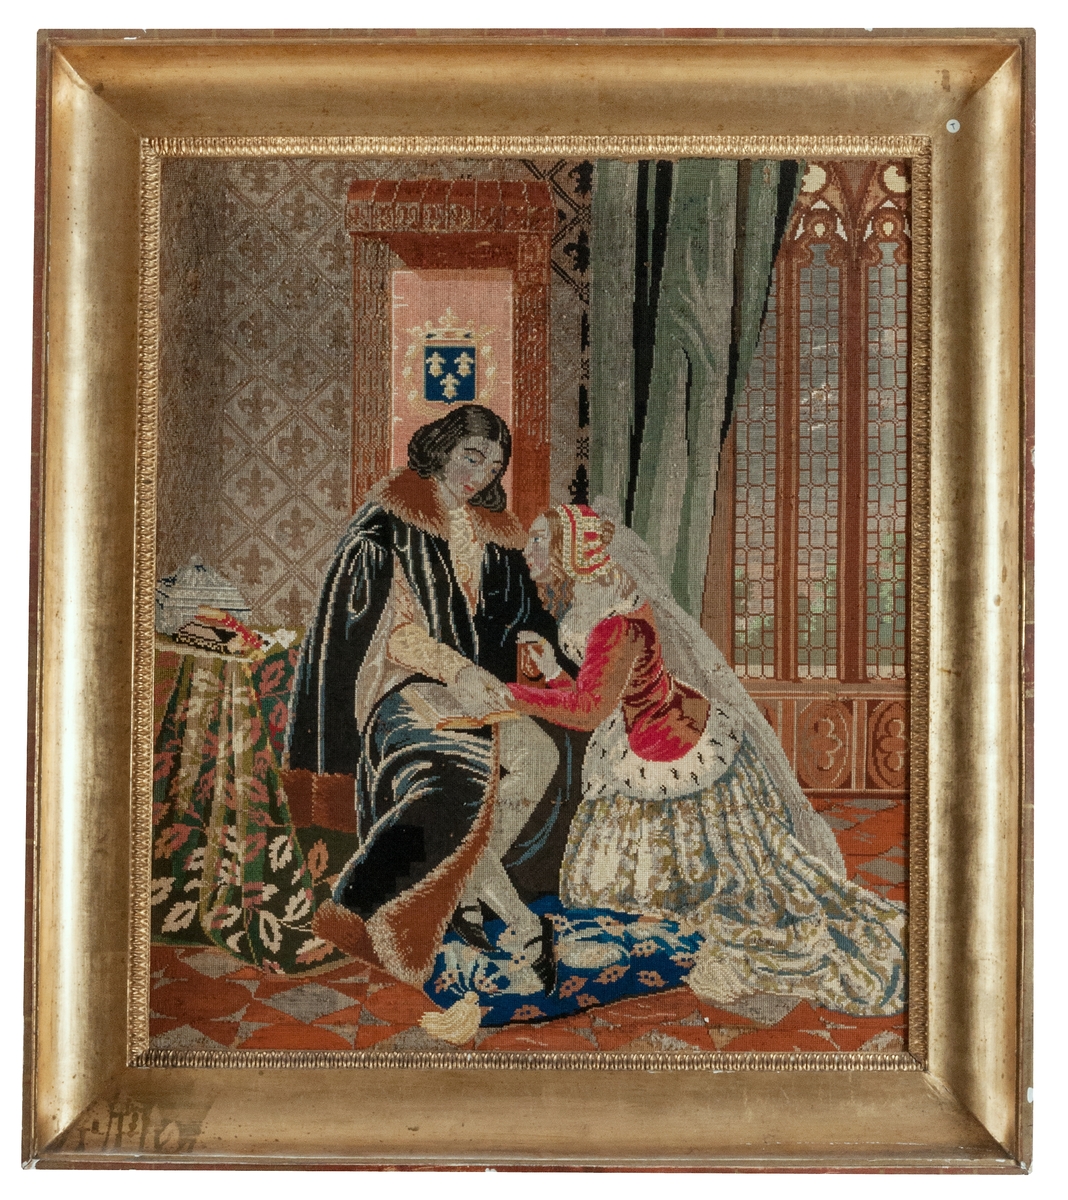 Tavla, "Broderad tavla från Geflehem, 1850-talet".